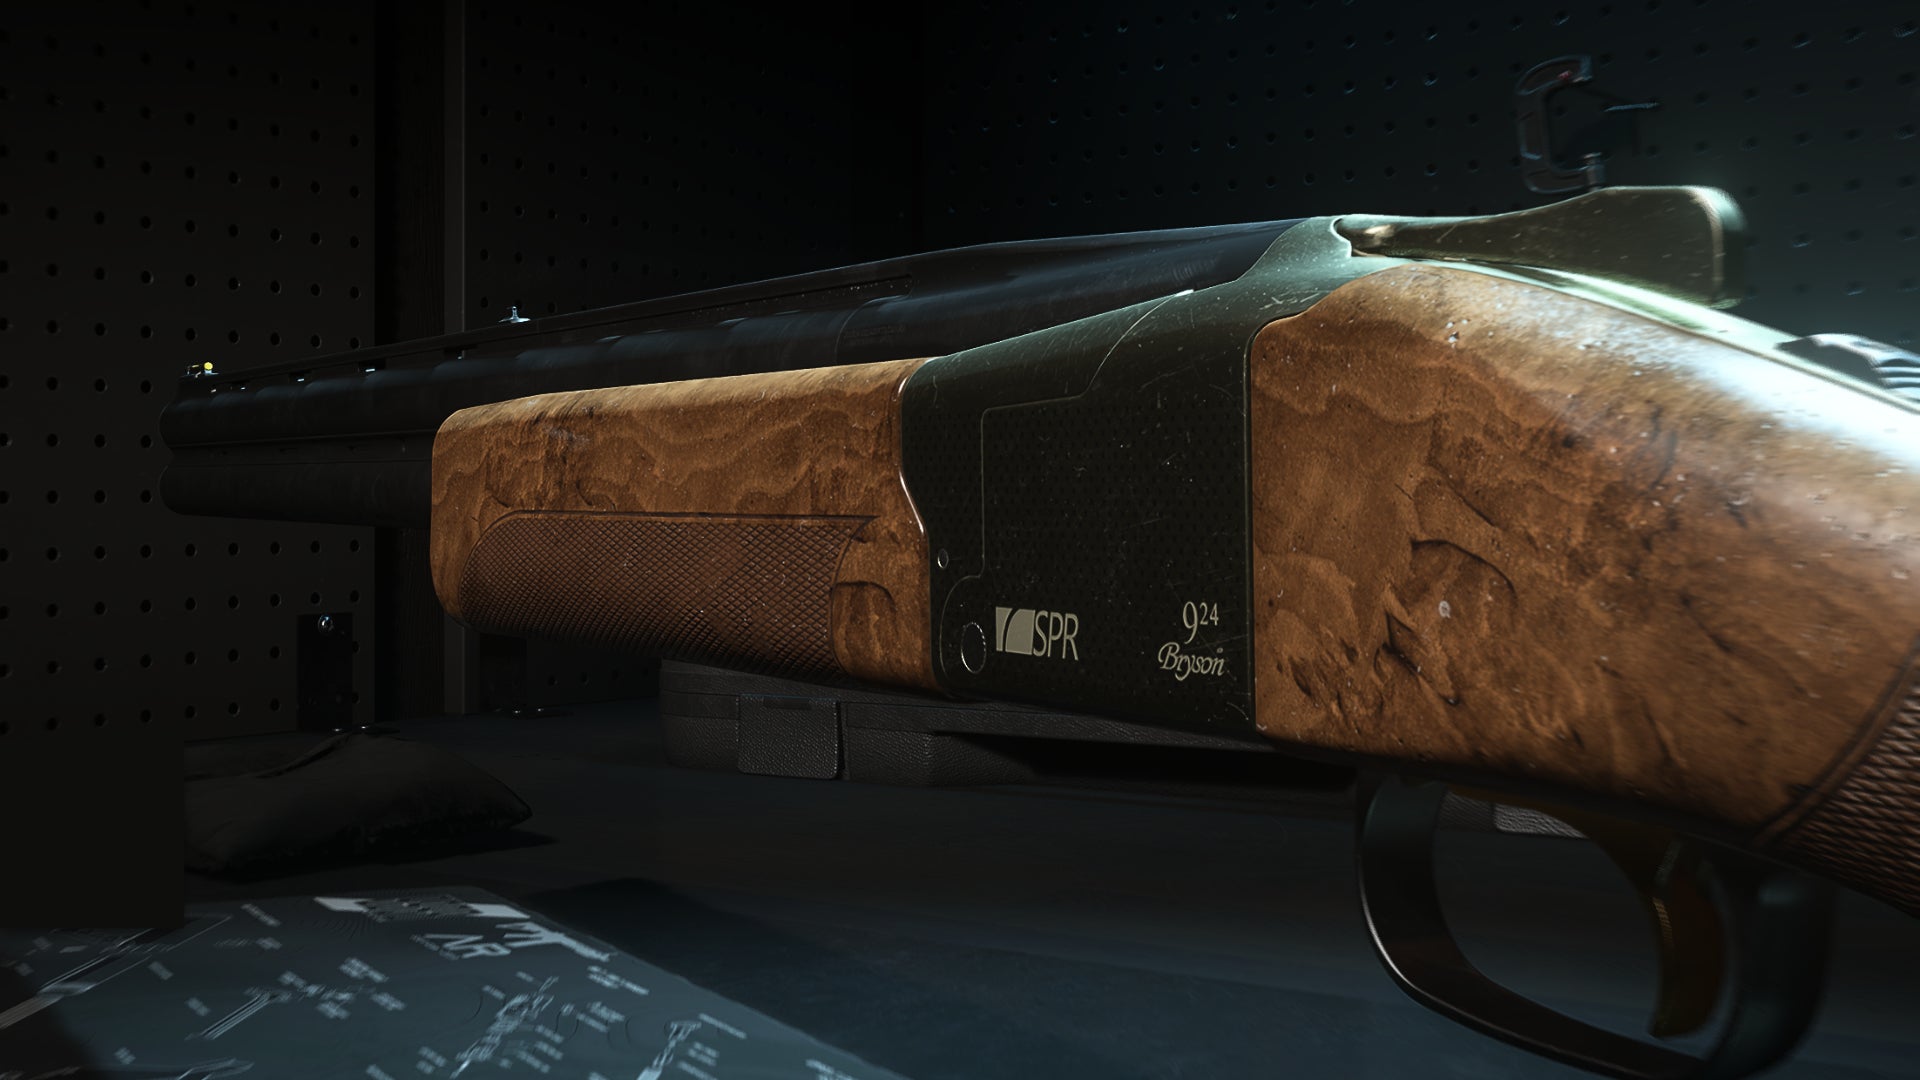 A close-up of the Lockwood 300 Shotgun in the Modern Warfare 2 Gunsmith screen.